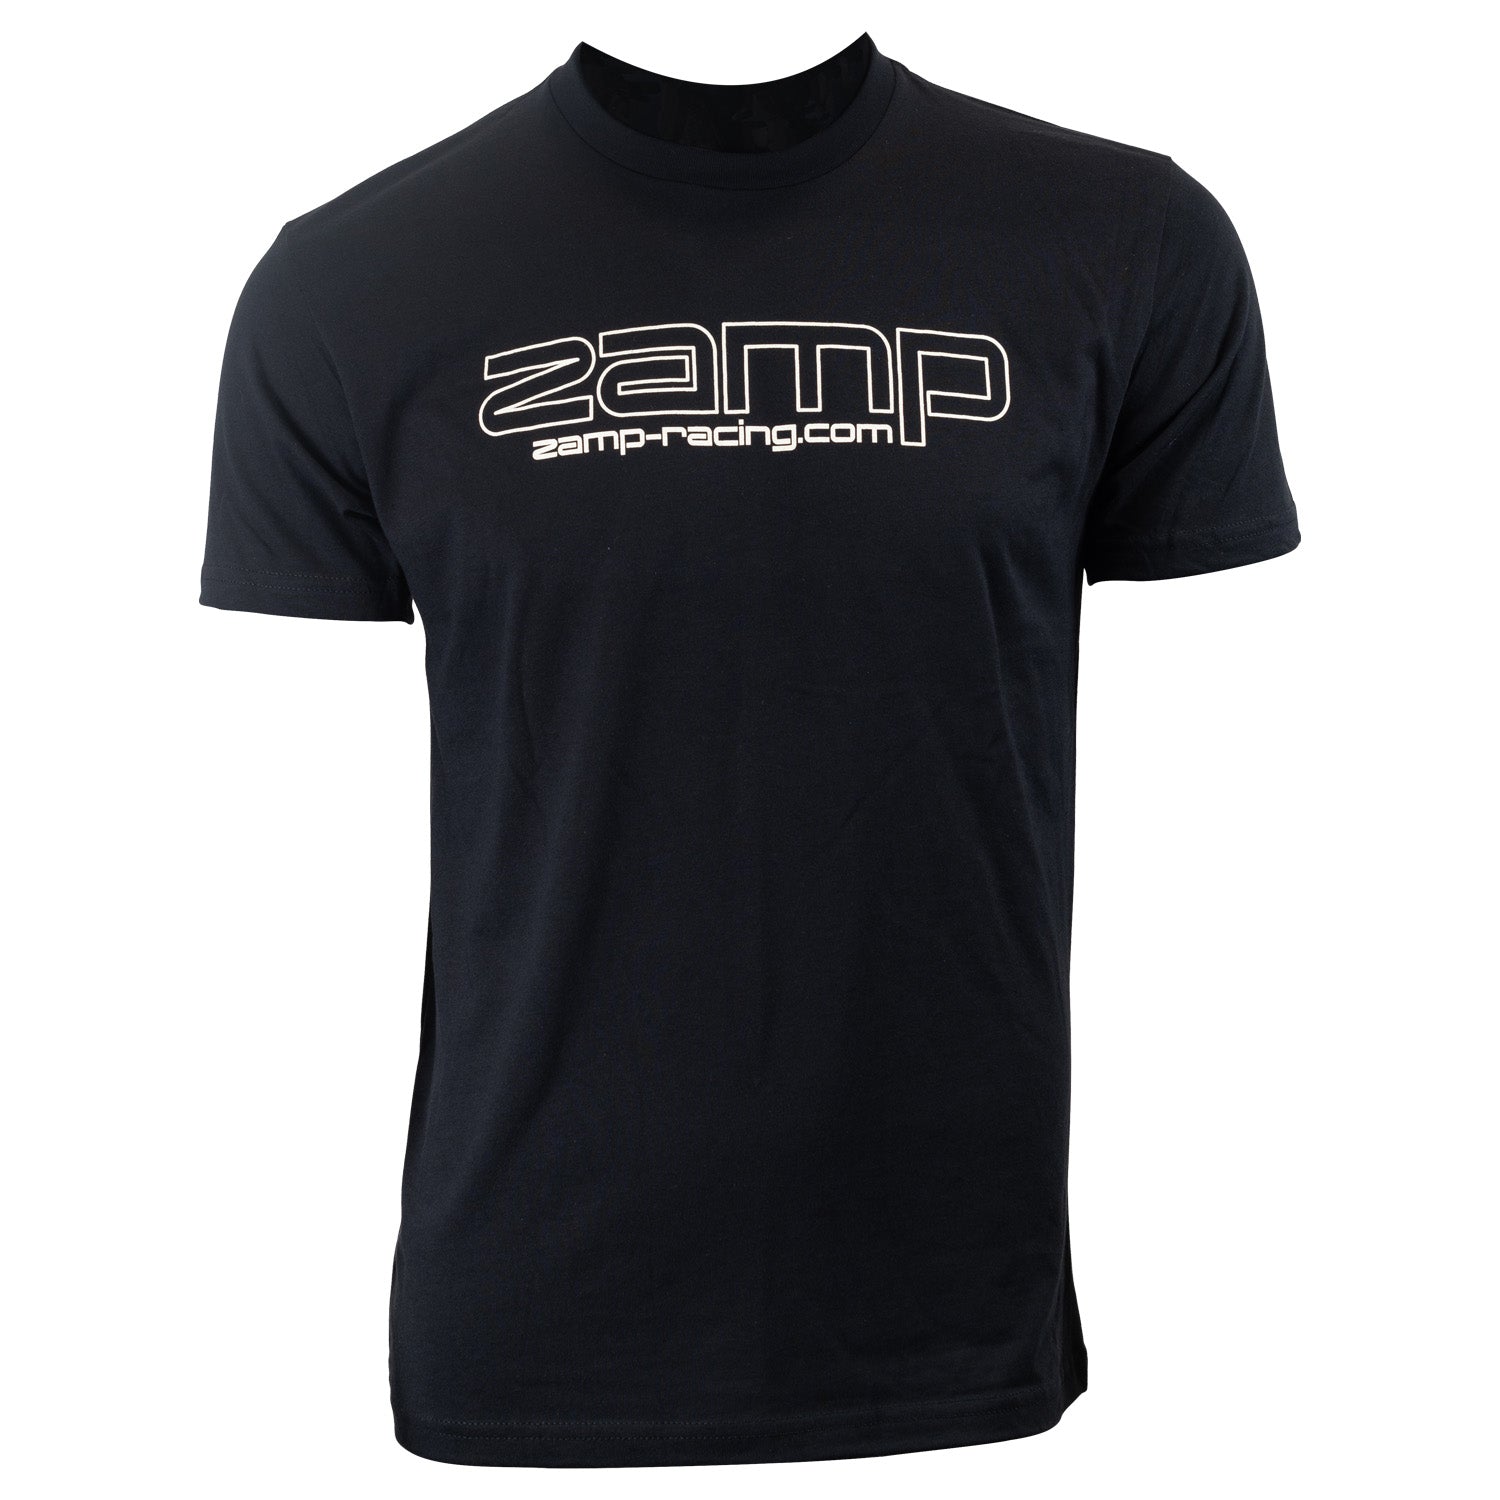 ZAMP Racing T-Shirt Black Small N002003S